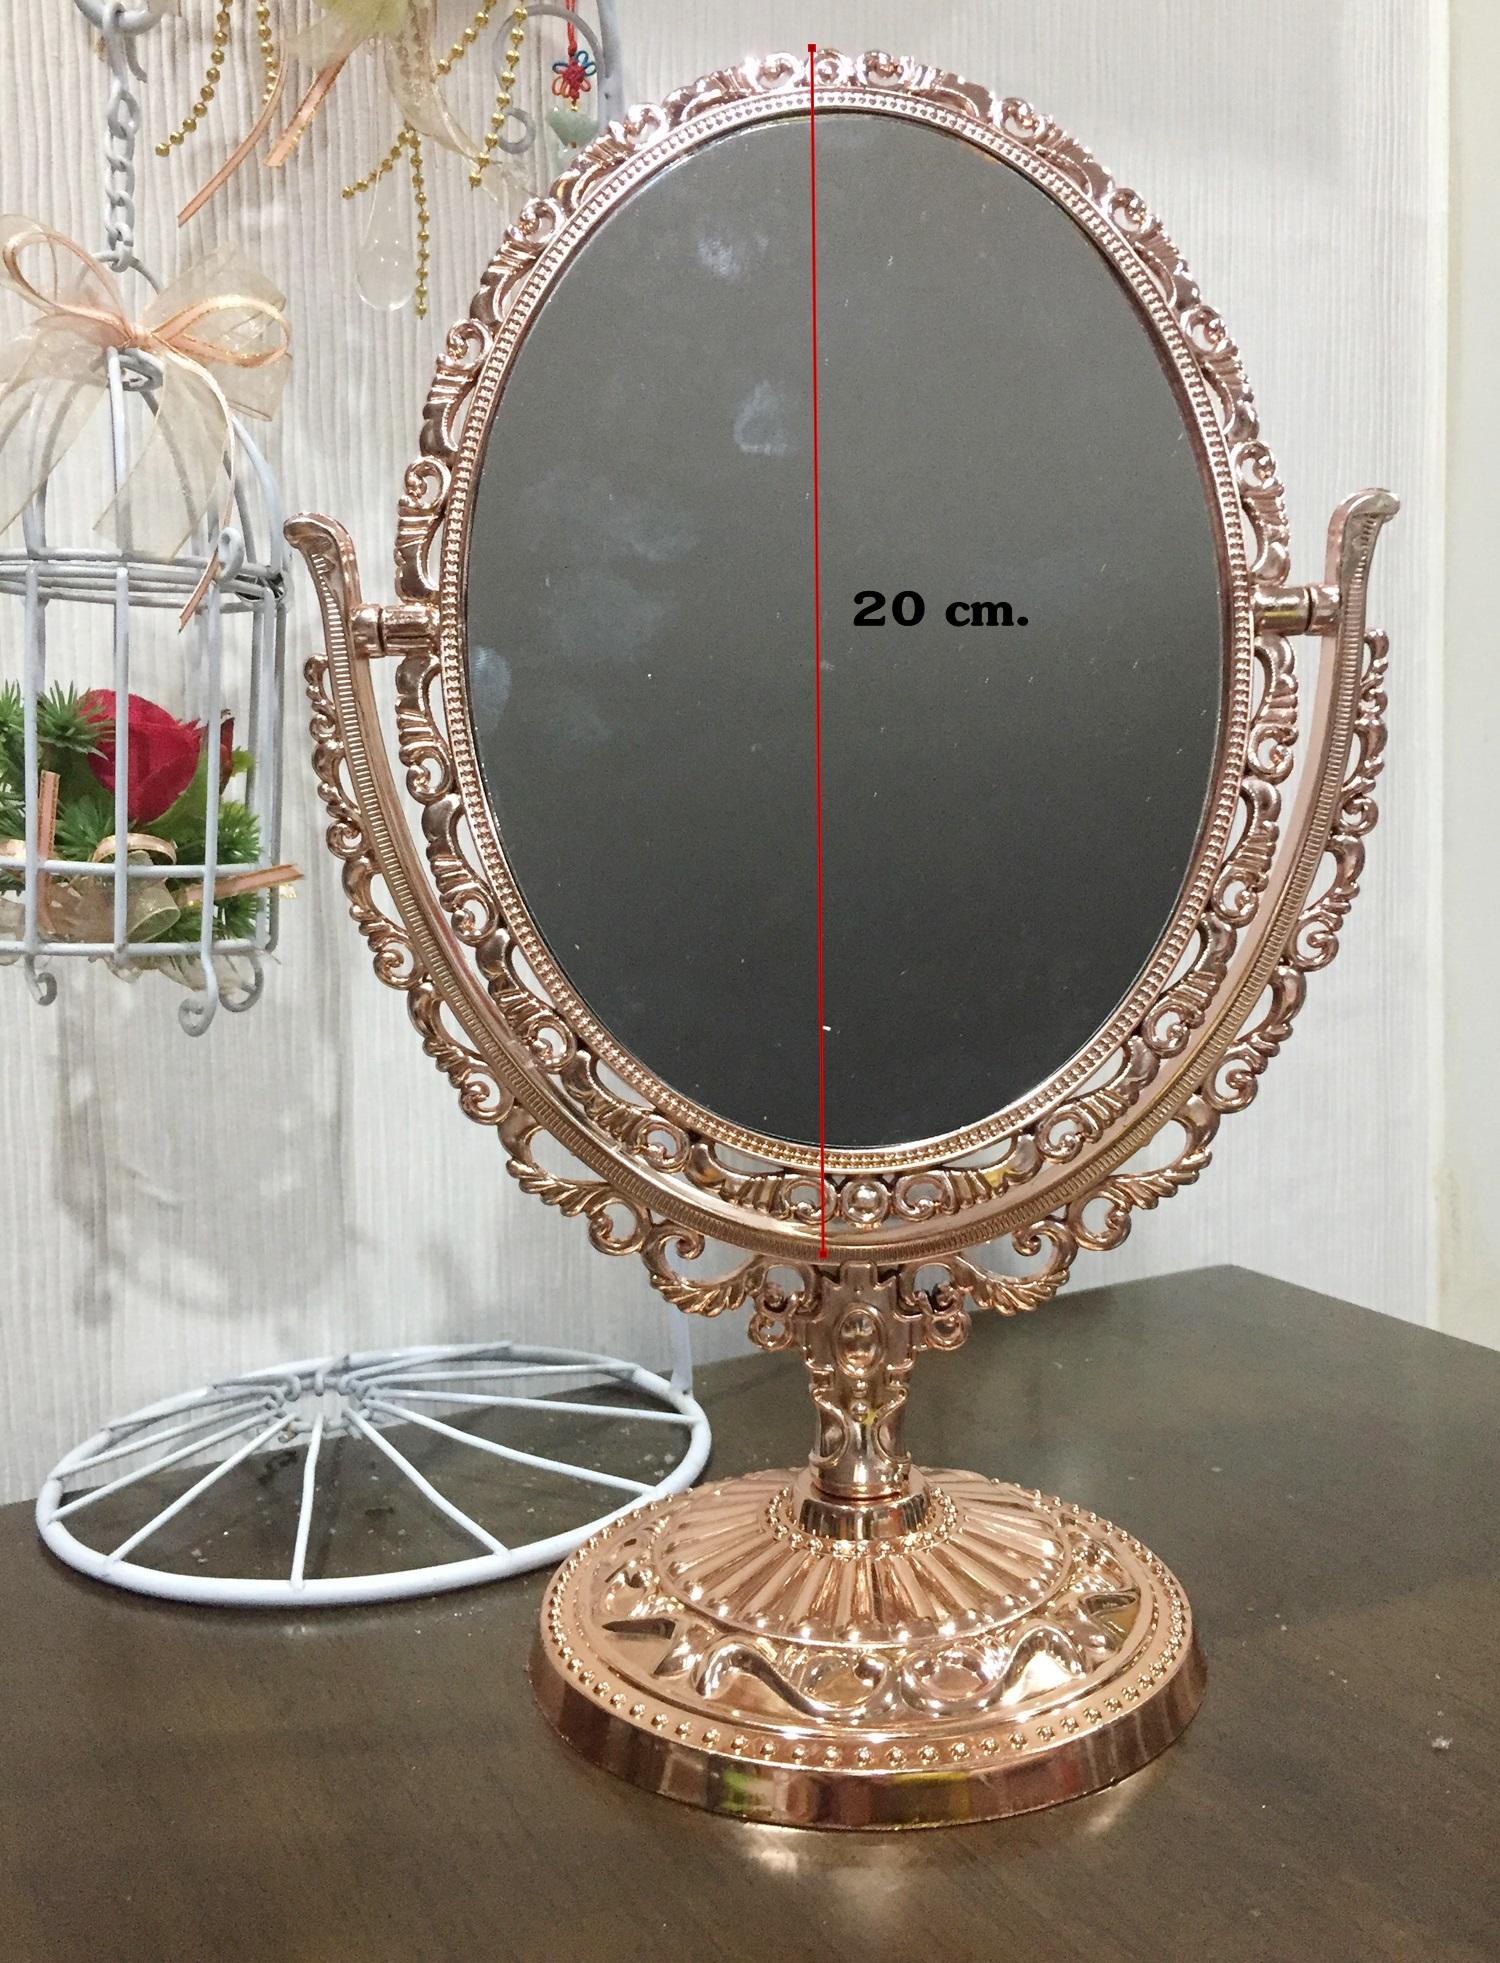 Cosmetic mirror กระจกแต่งหน้าตั้งโต๊ะ กระจก2ด้าน สีทองชมพู (pink gold) ขนาด30 cm.